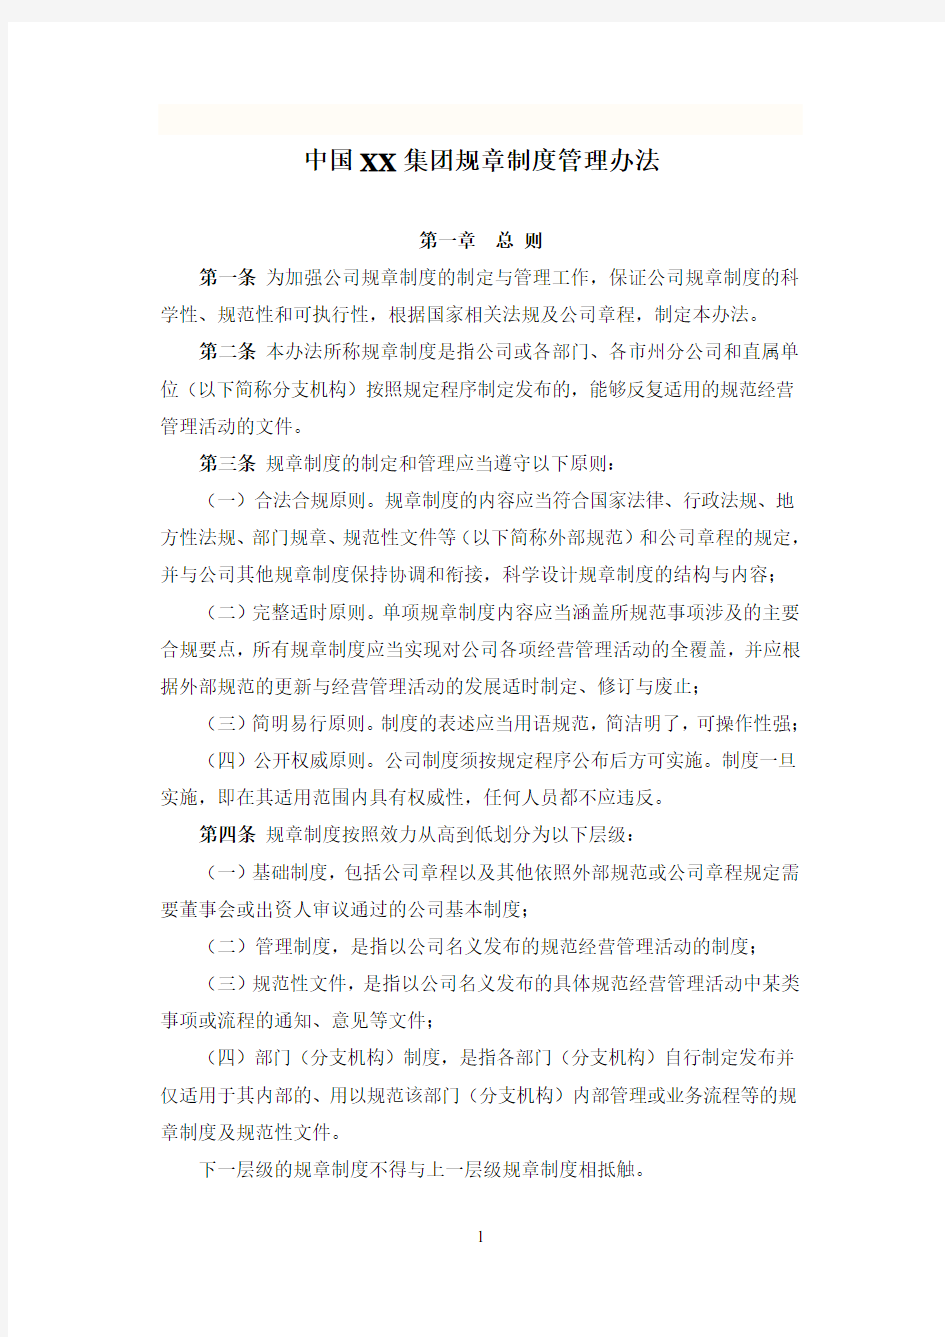 中国XX集团规章制度管理办法